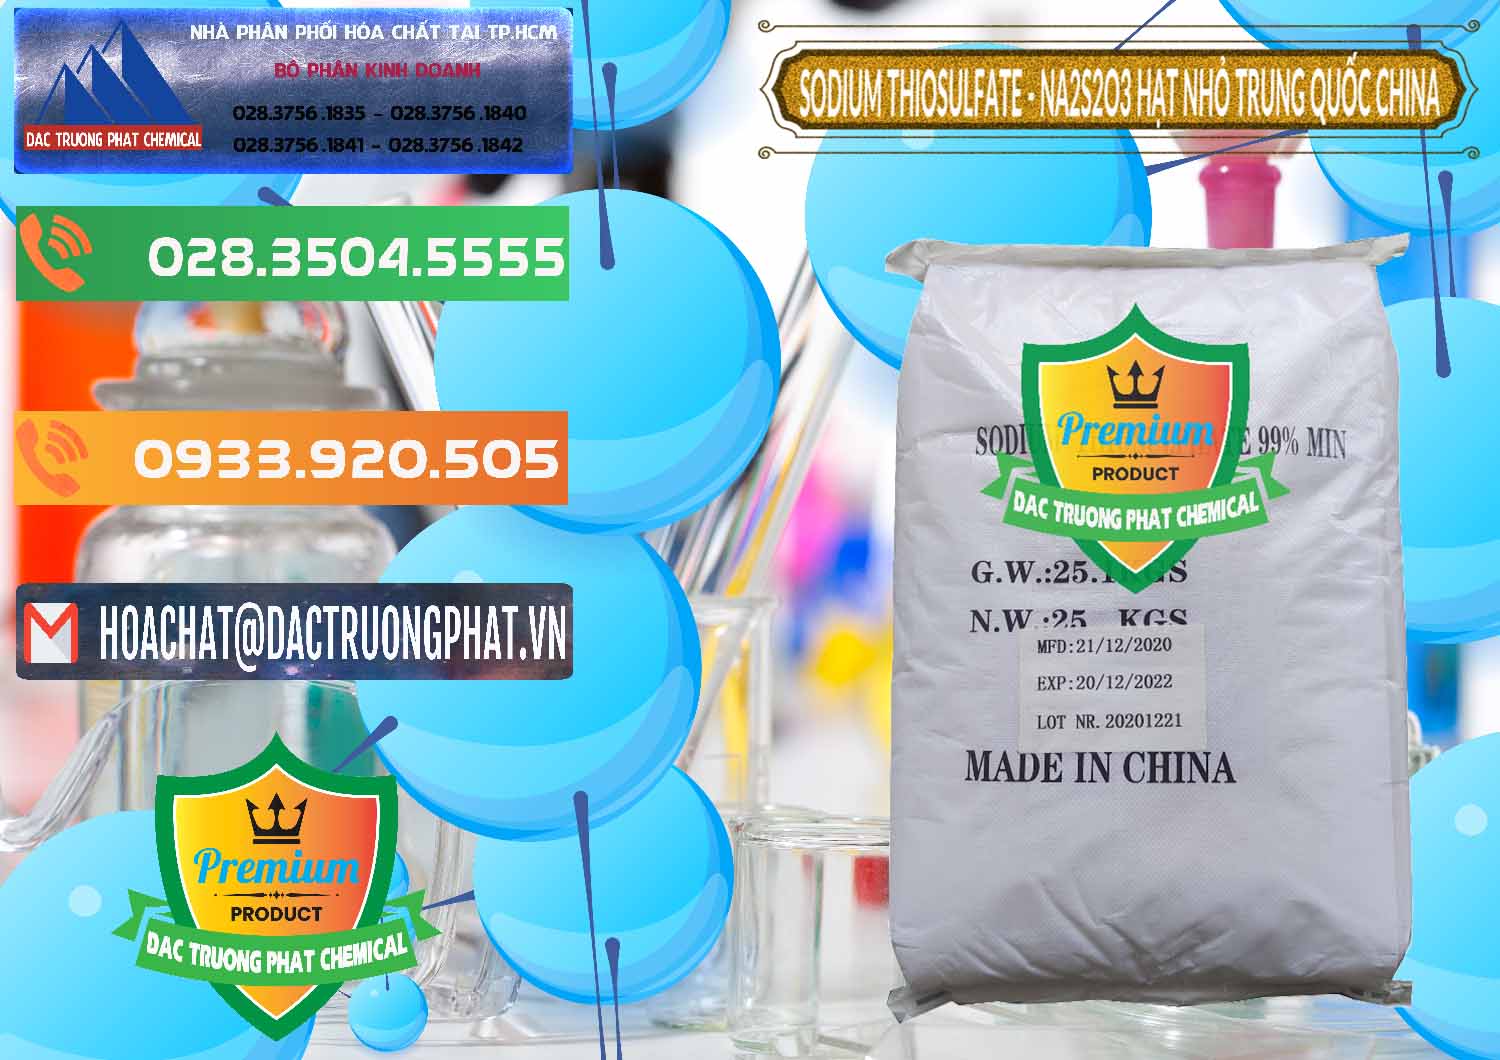 Nơi bán ( cung ứng ) Sodium Thiosulfate - NA2S2O3 Hạt Nhỏ Trung Quốc China - 0204 - Công ty bán và phân phối hóa chất tại TP.HCM - hoachatxulynuoc.com.vn